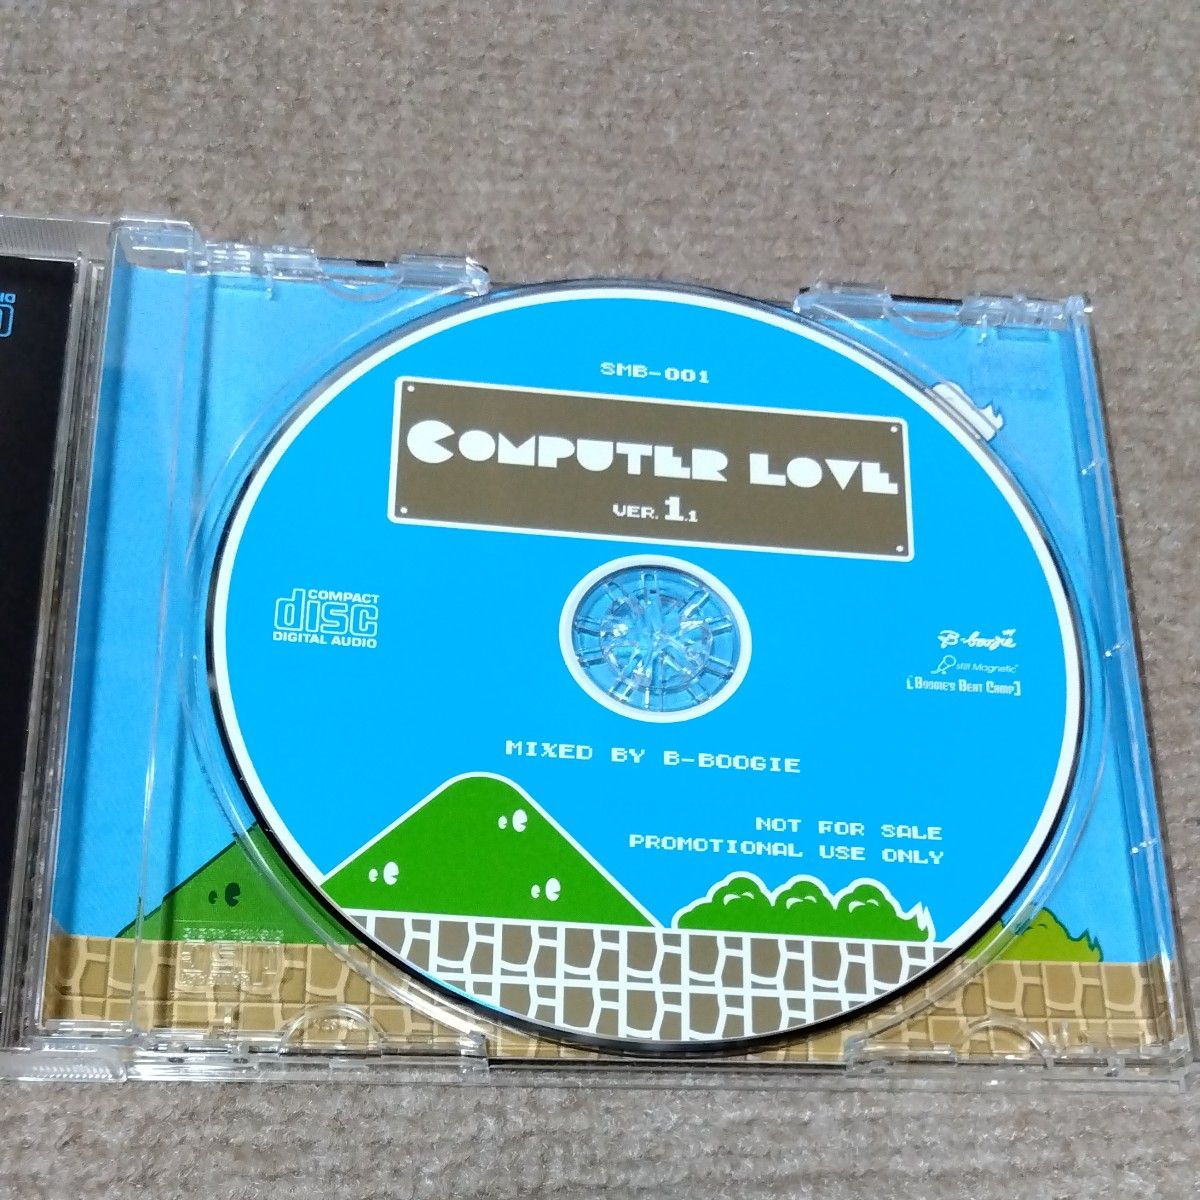 ［CD］COMPUTER LOVE VER.1.1